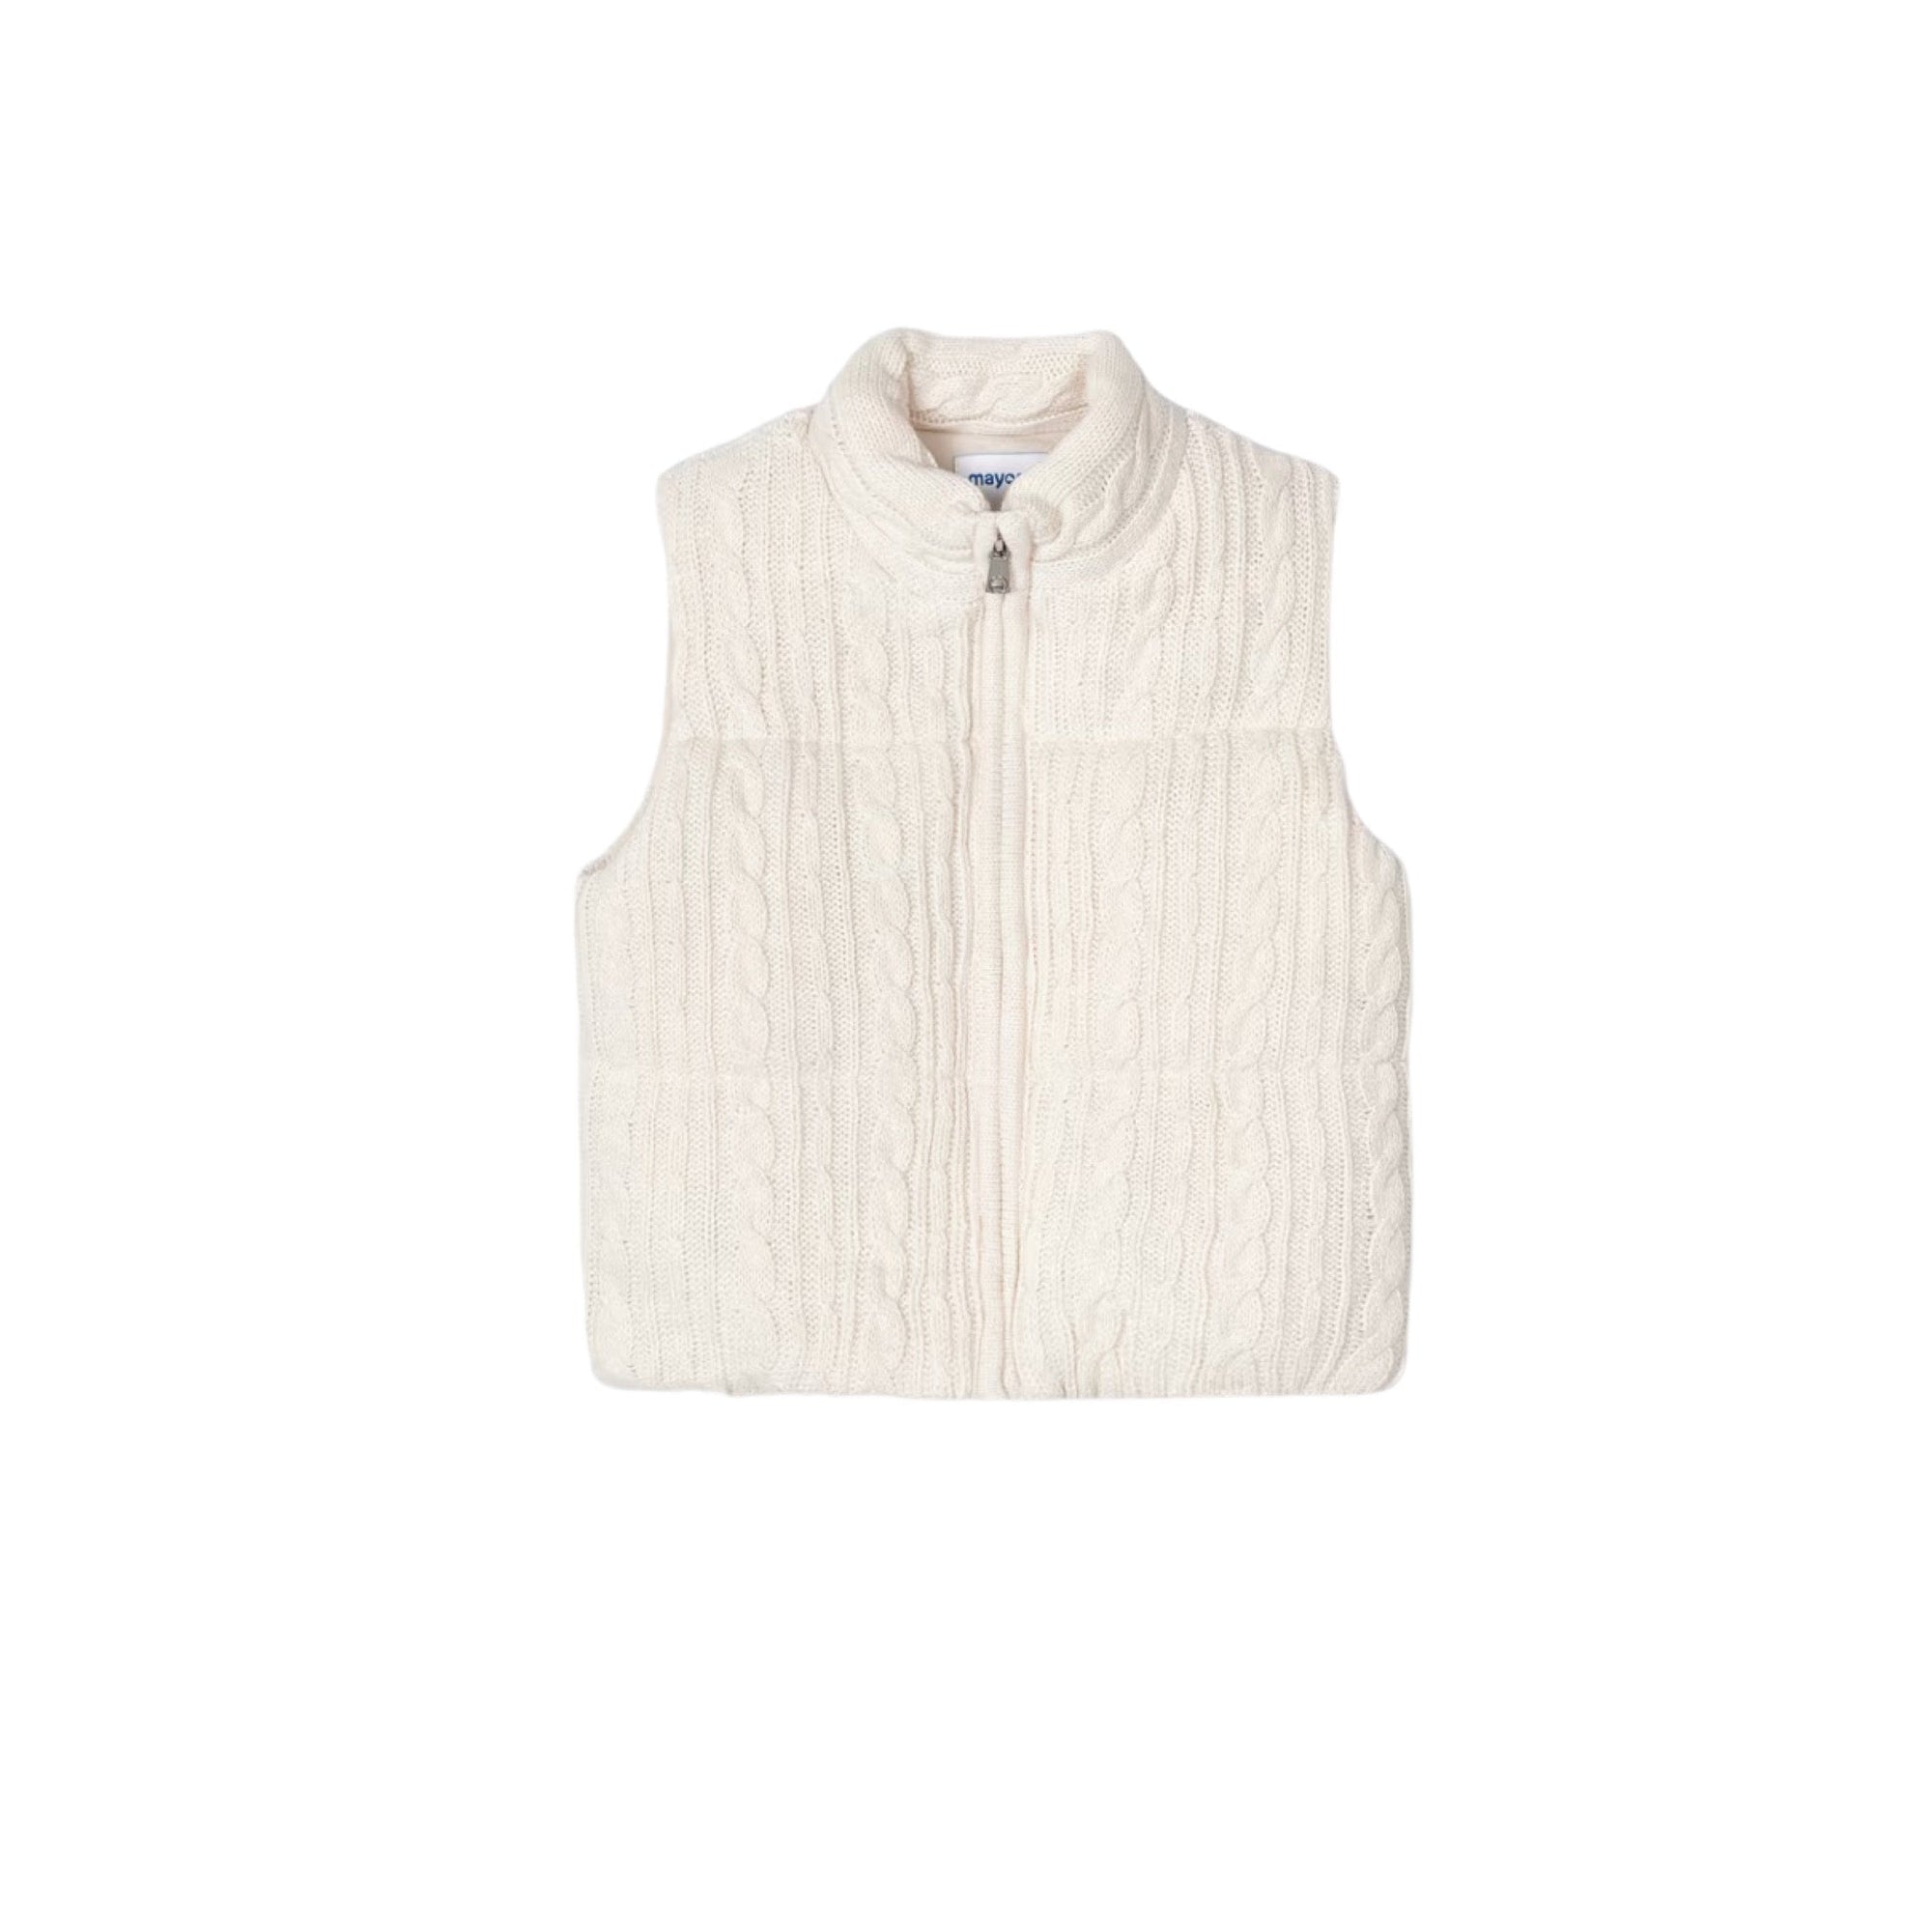 Padded Ivory Knit Sweater Vest